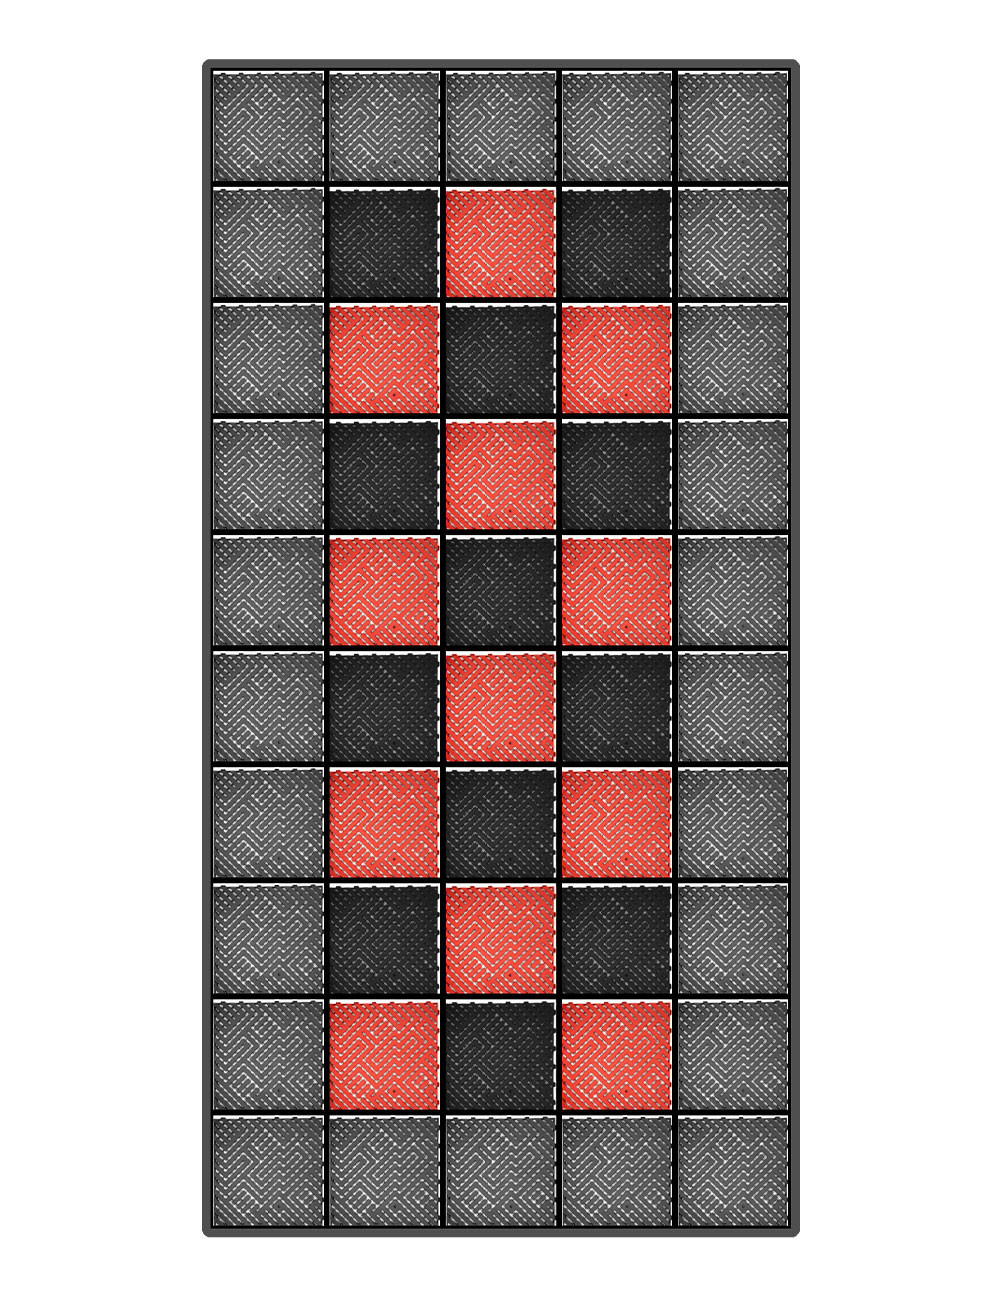 Kit dalles de sol damier pour voiture - 3 couleurs - 12m² - 2,5 m x 5 m - Anthracite, noir et rouge